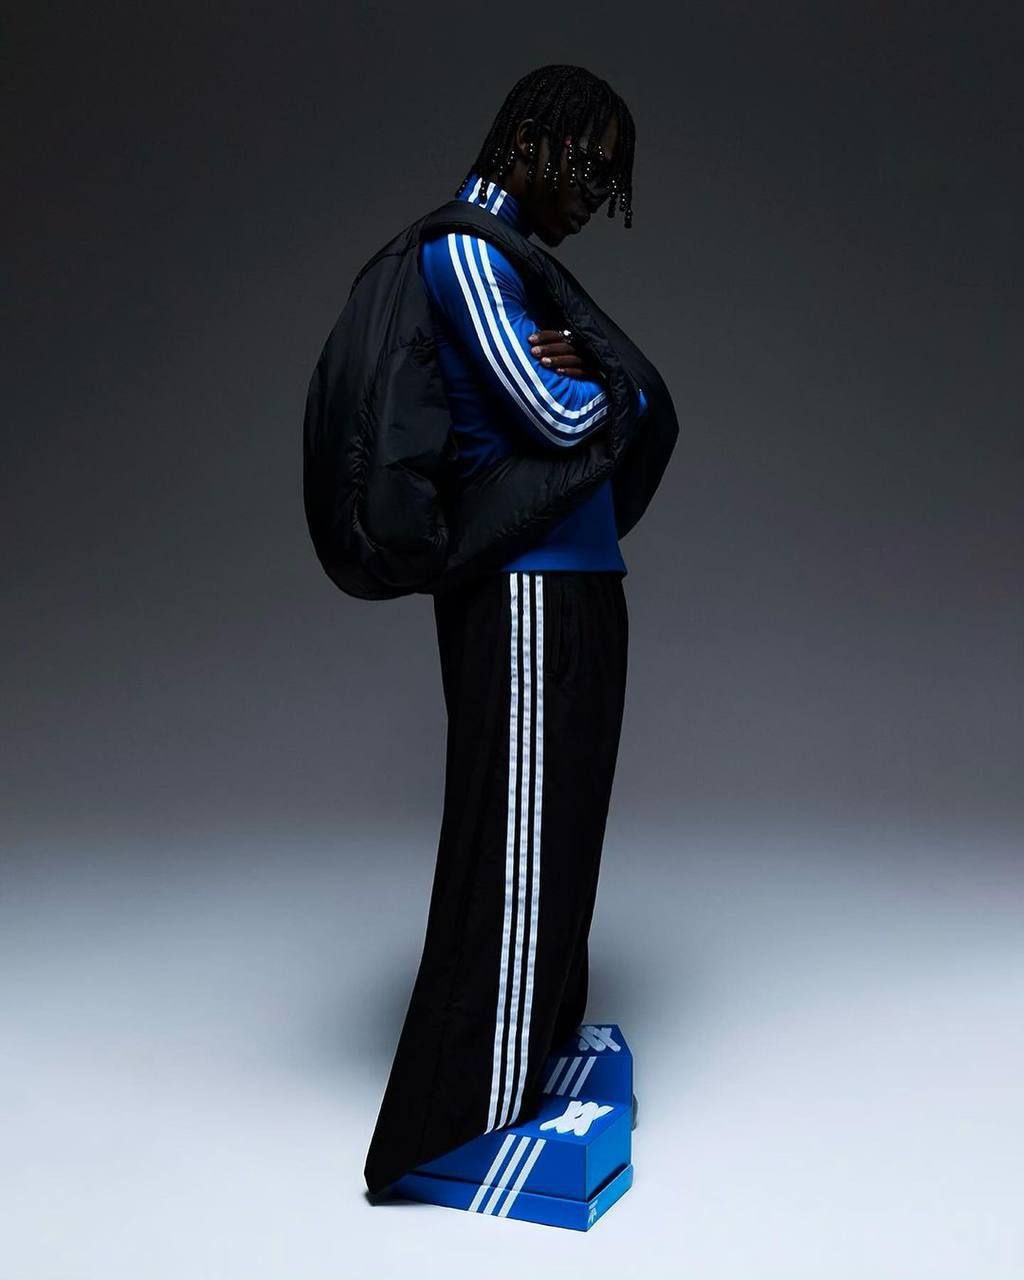 Adidas lijkt echt met schoenendoos ‘sneakers’ te komen